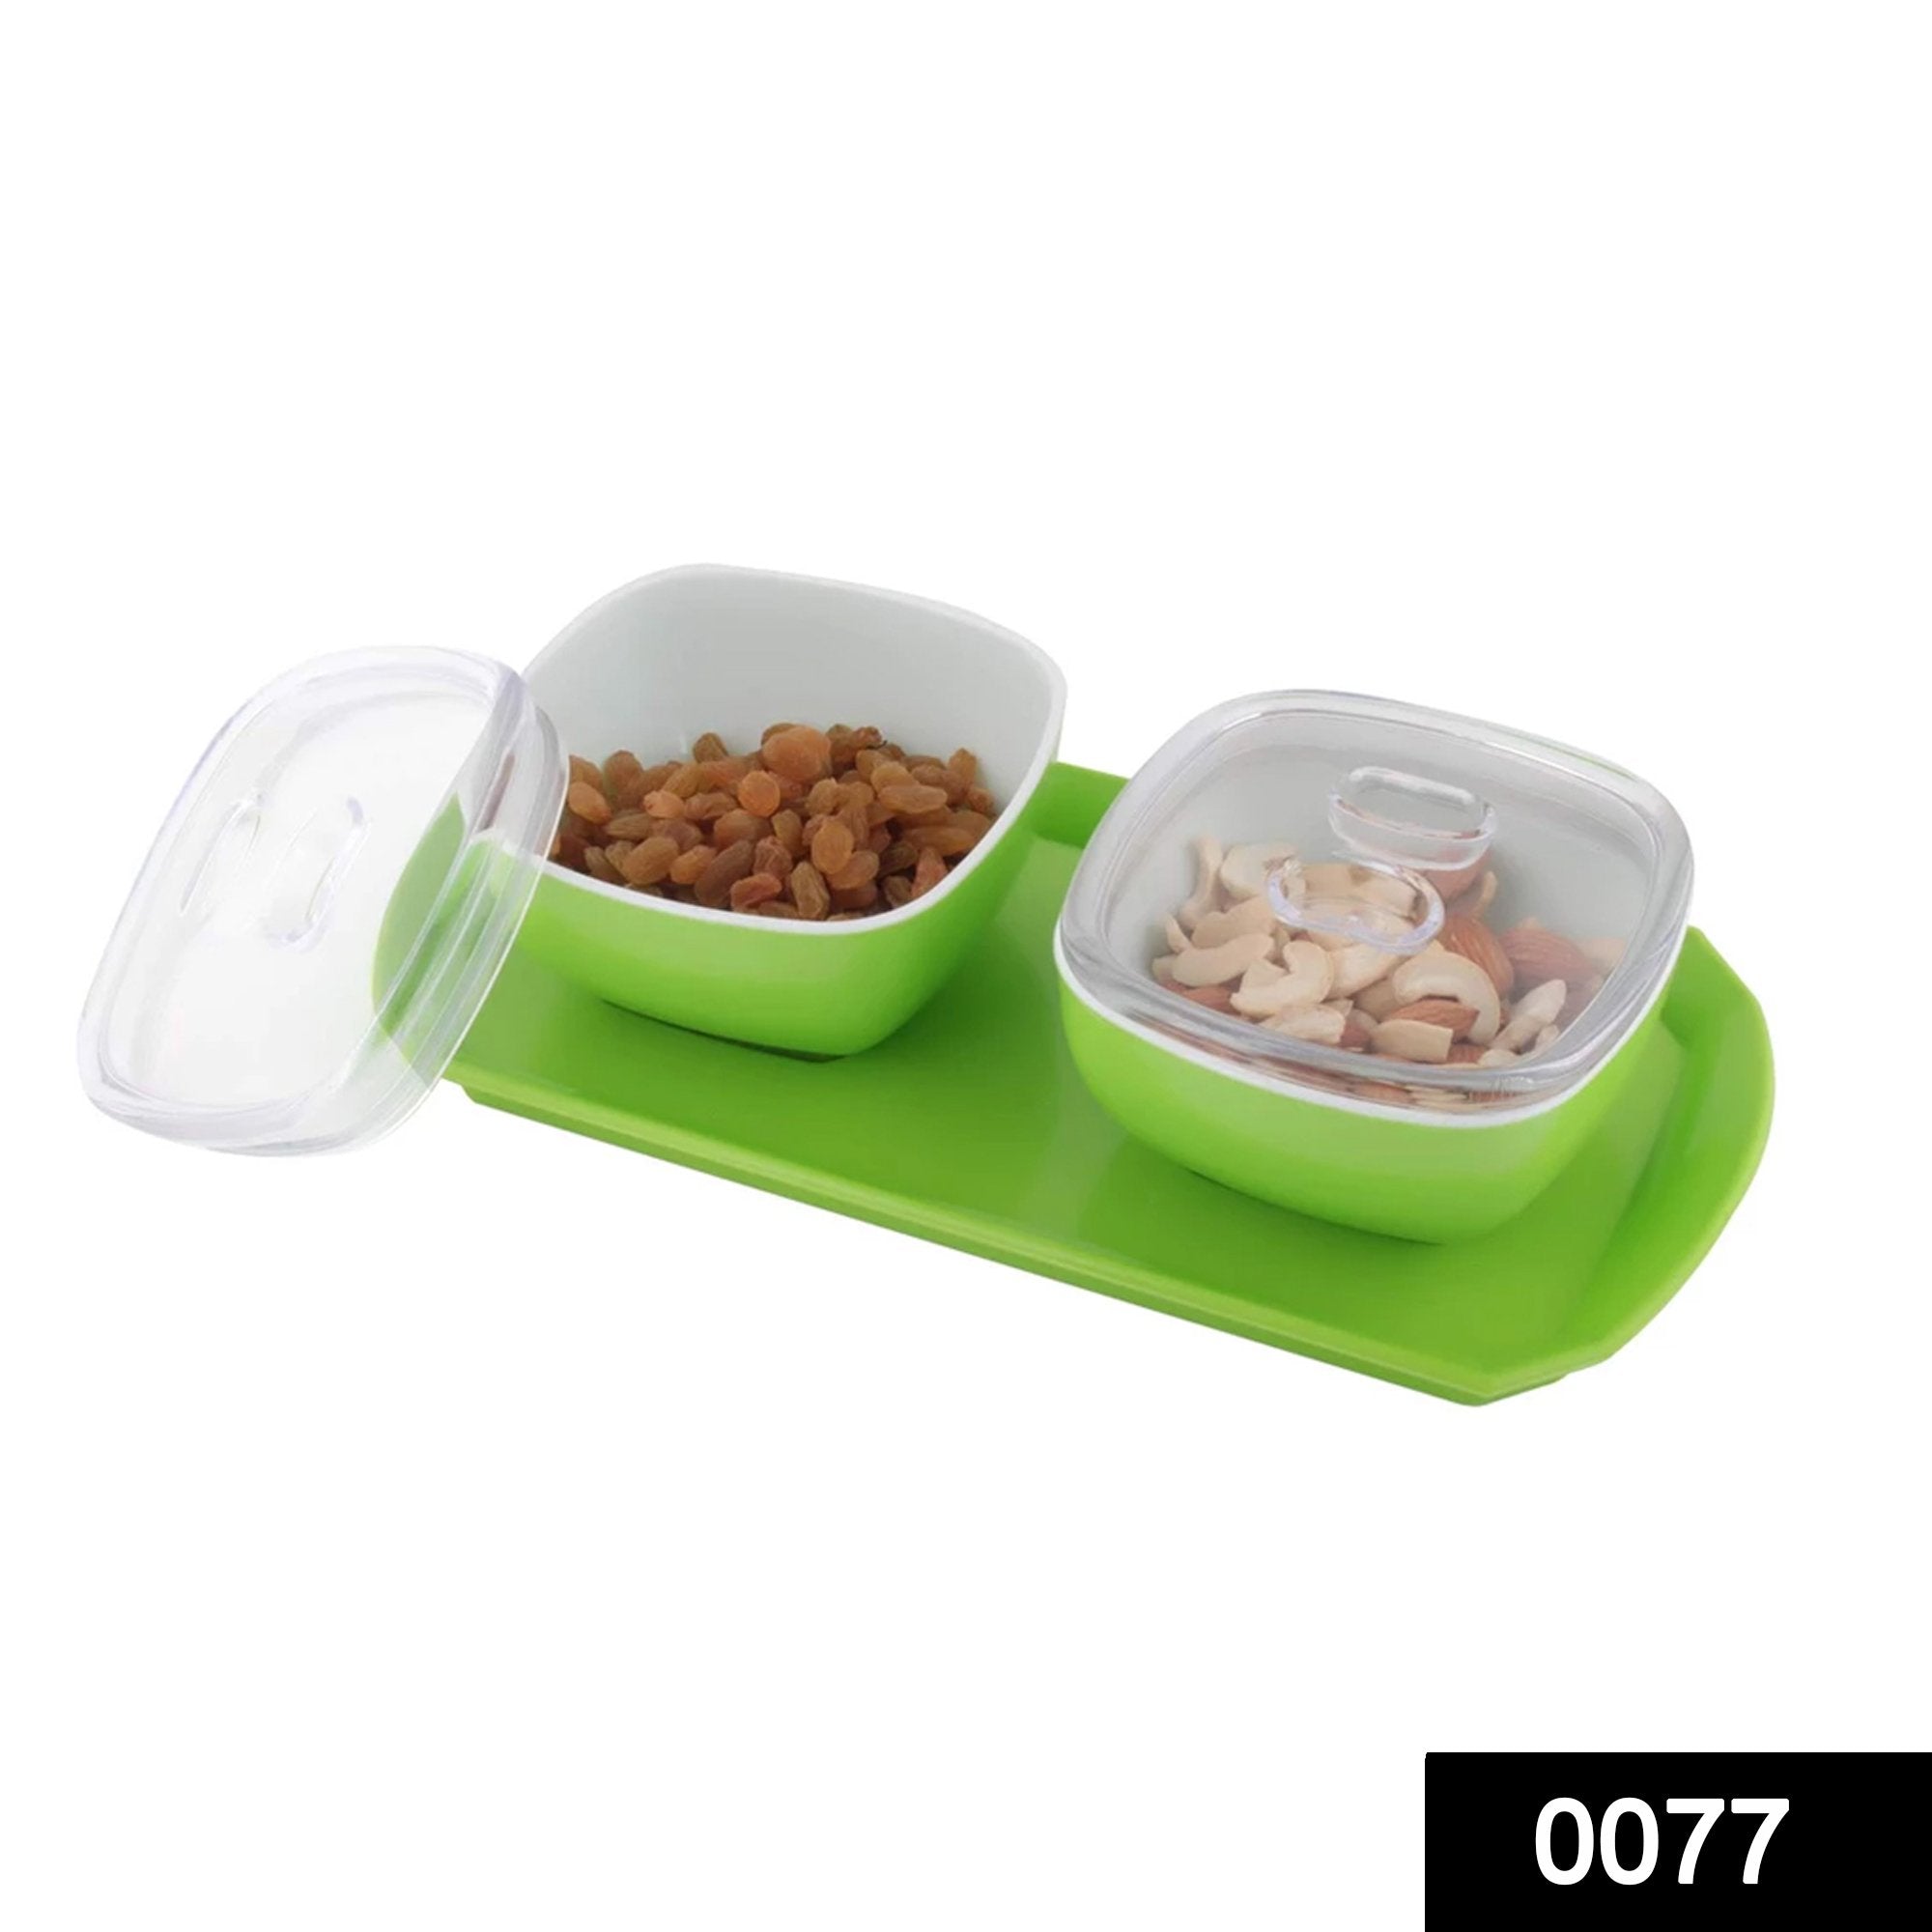 0077 Dryfruit Box, Chocolates Box, Sweet Box, Mouth Freshener Box, Indian Mukhwas Box (Set of 2, Orange) - SkyShopy